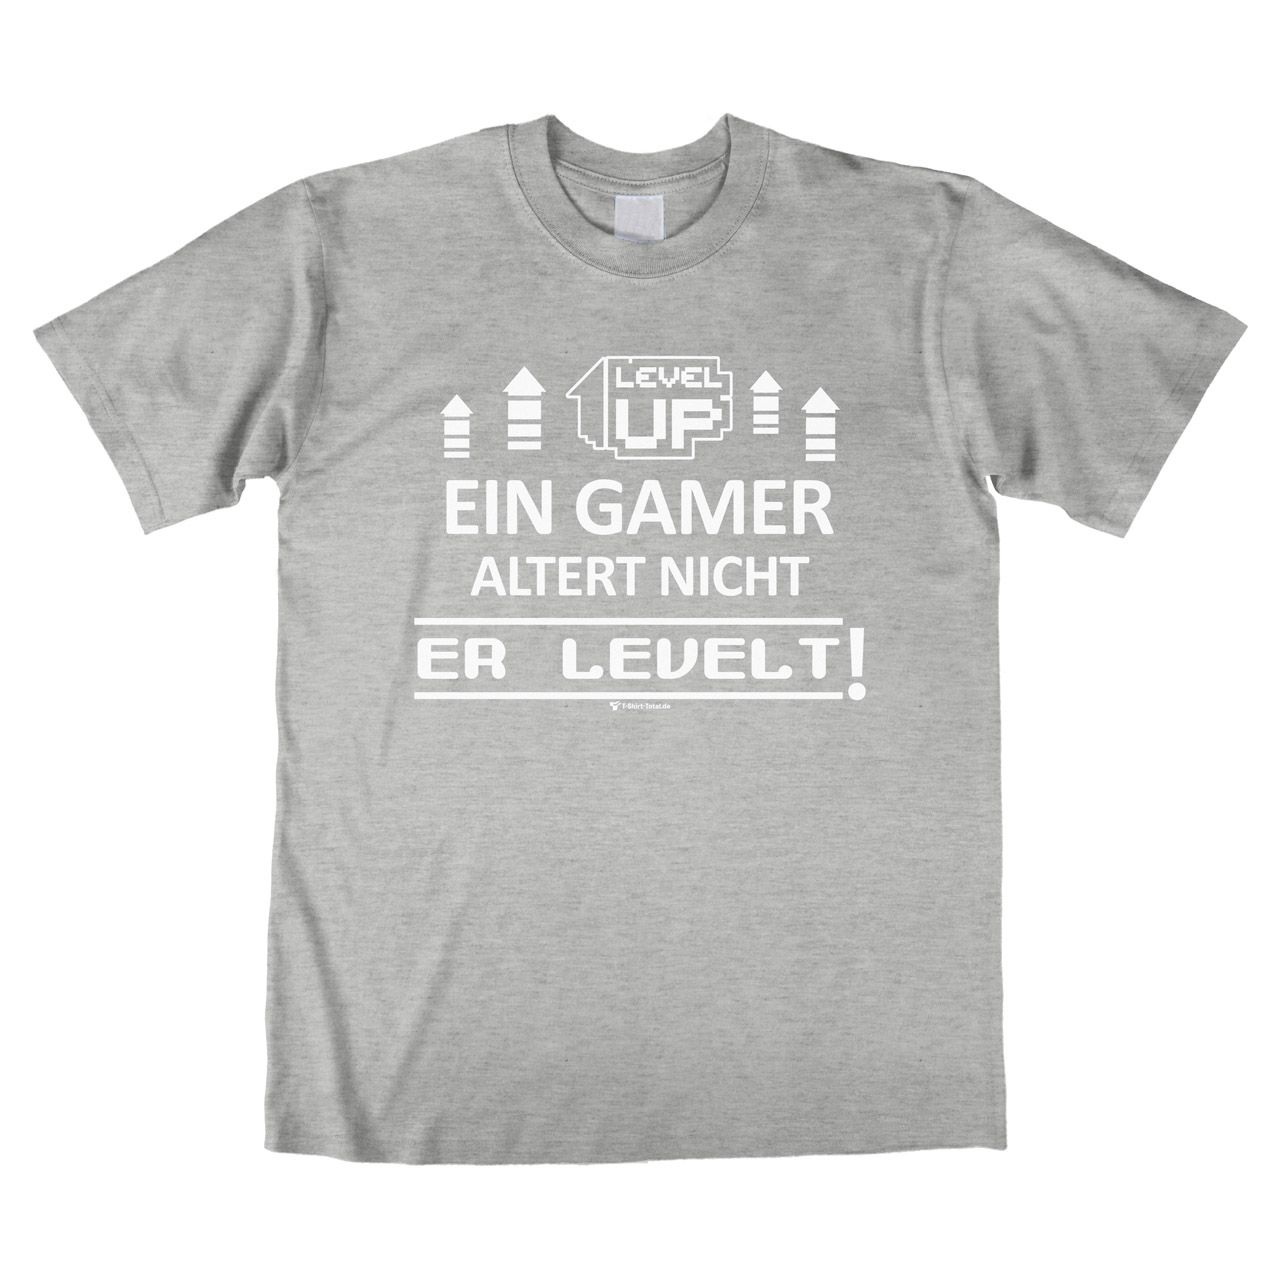 Ein Gamer levelt Unisex T-Shirt grau meliert Medium